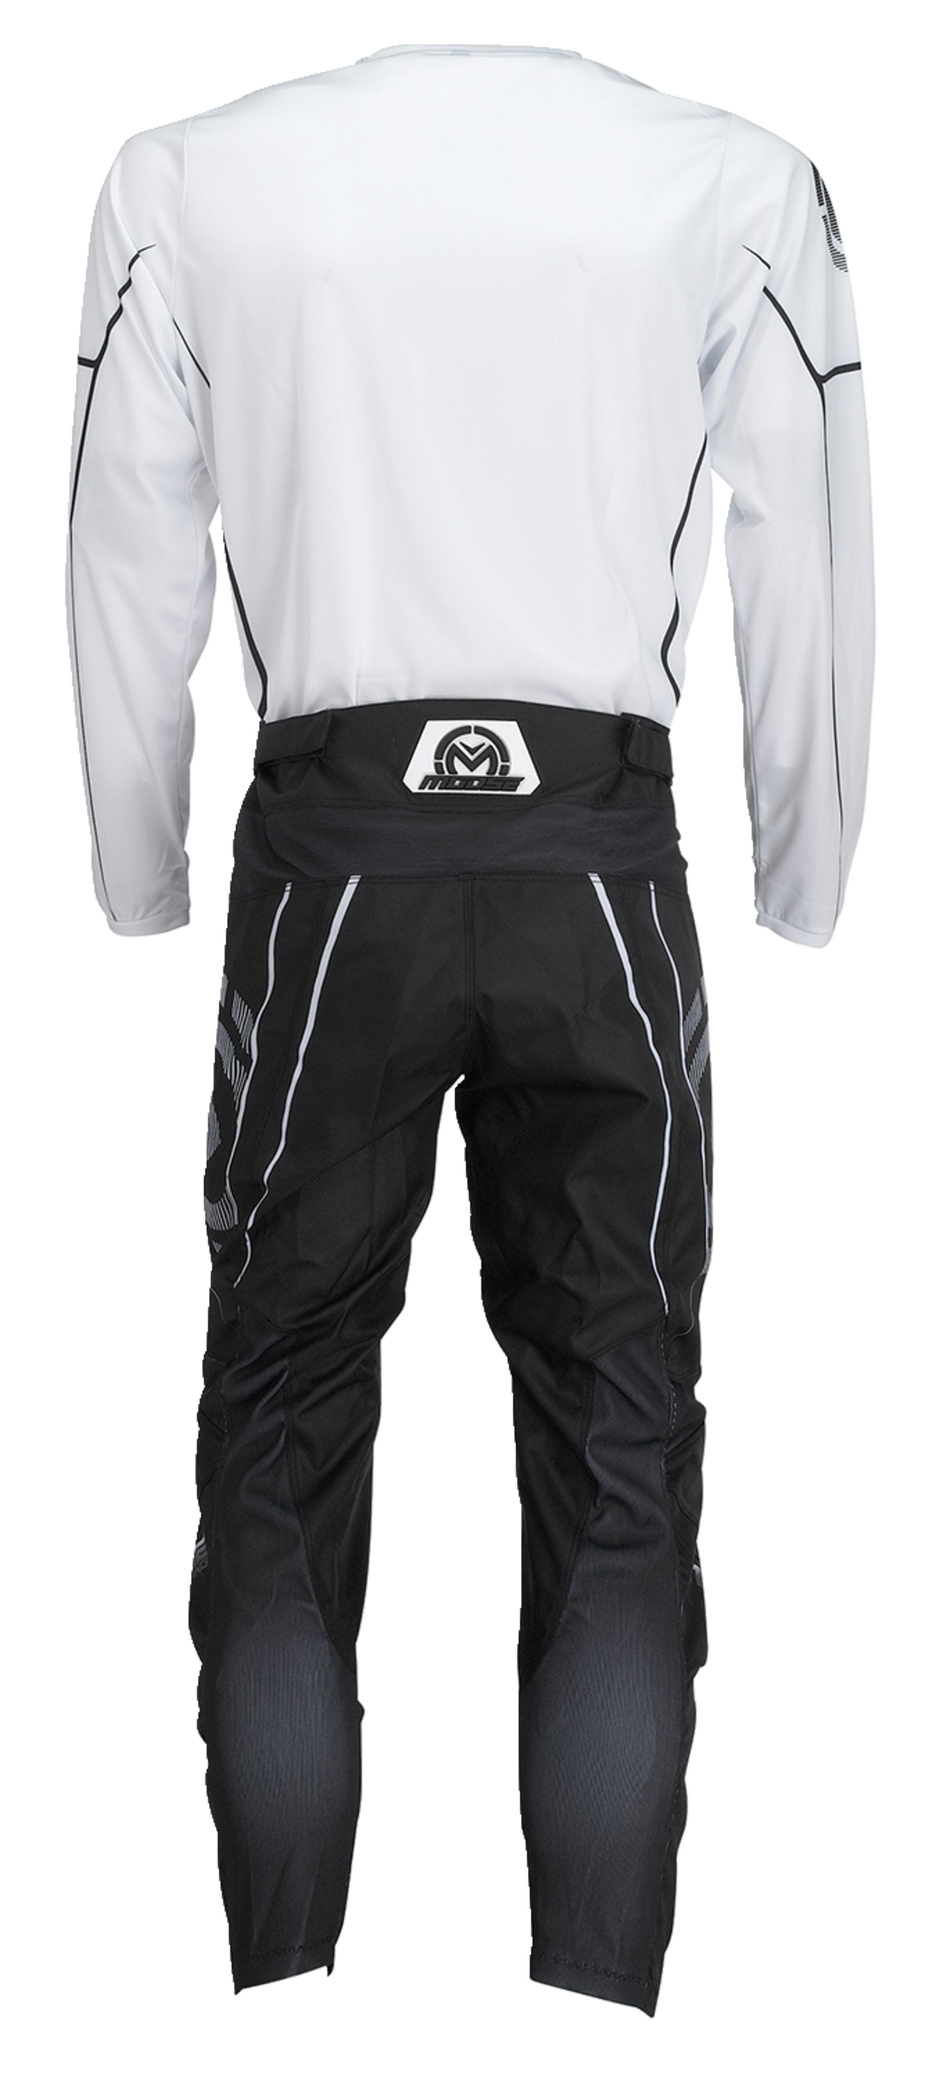 MOOSE RACING Qualifier® Jersey - Black/White - 3XL 2910-7193